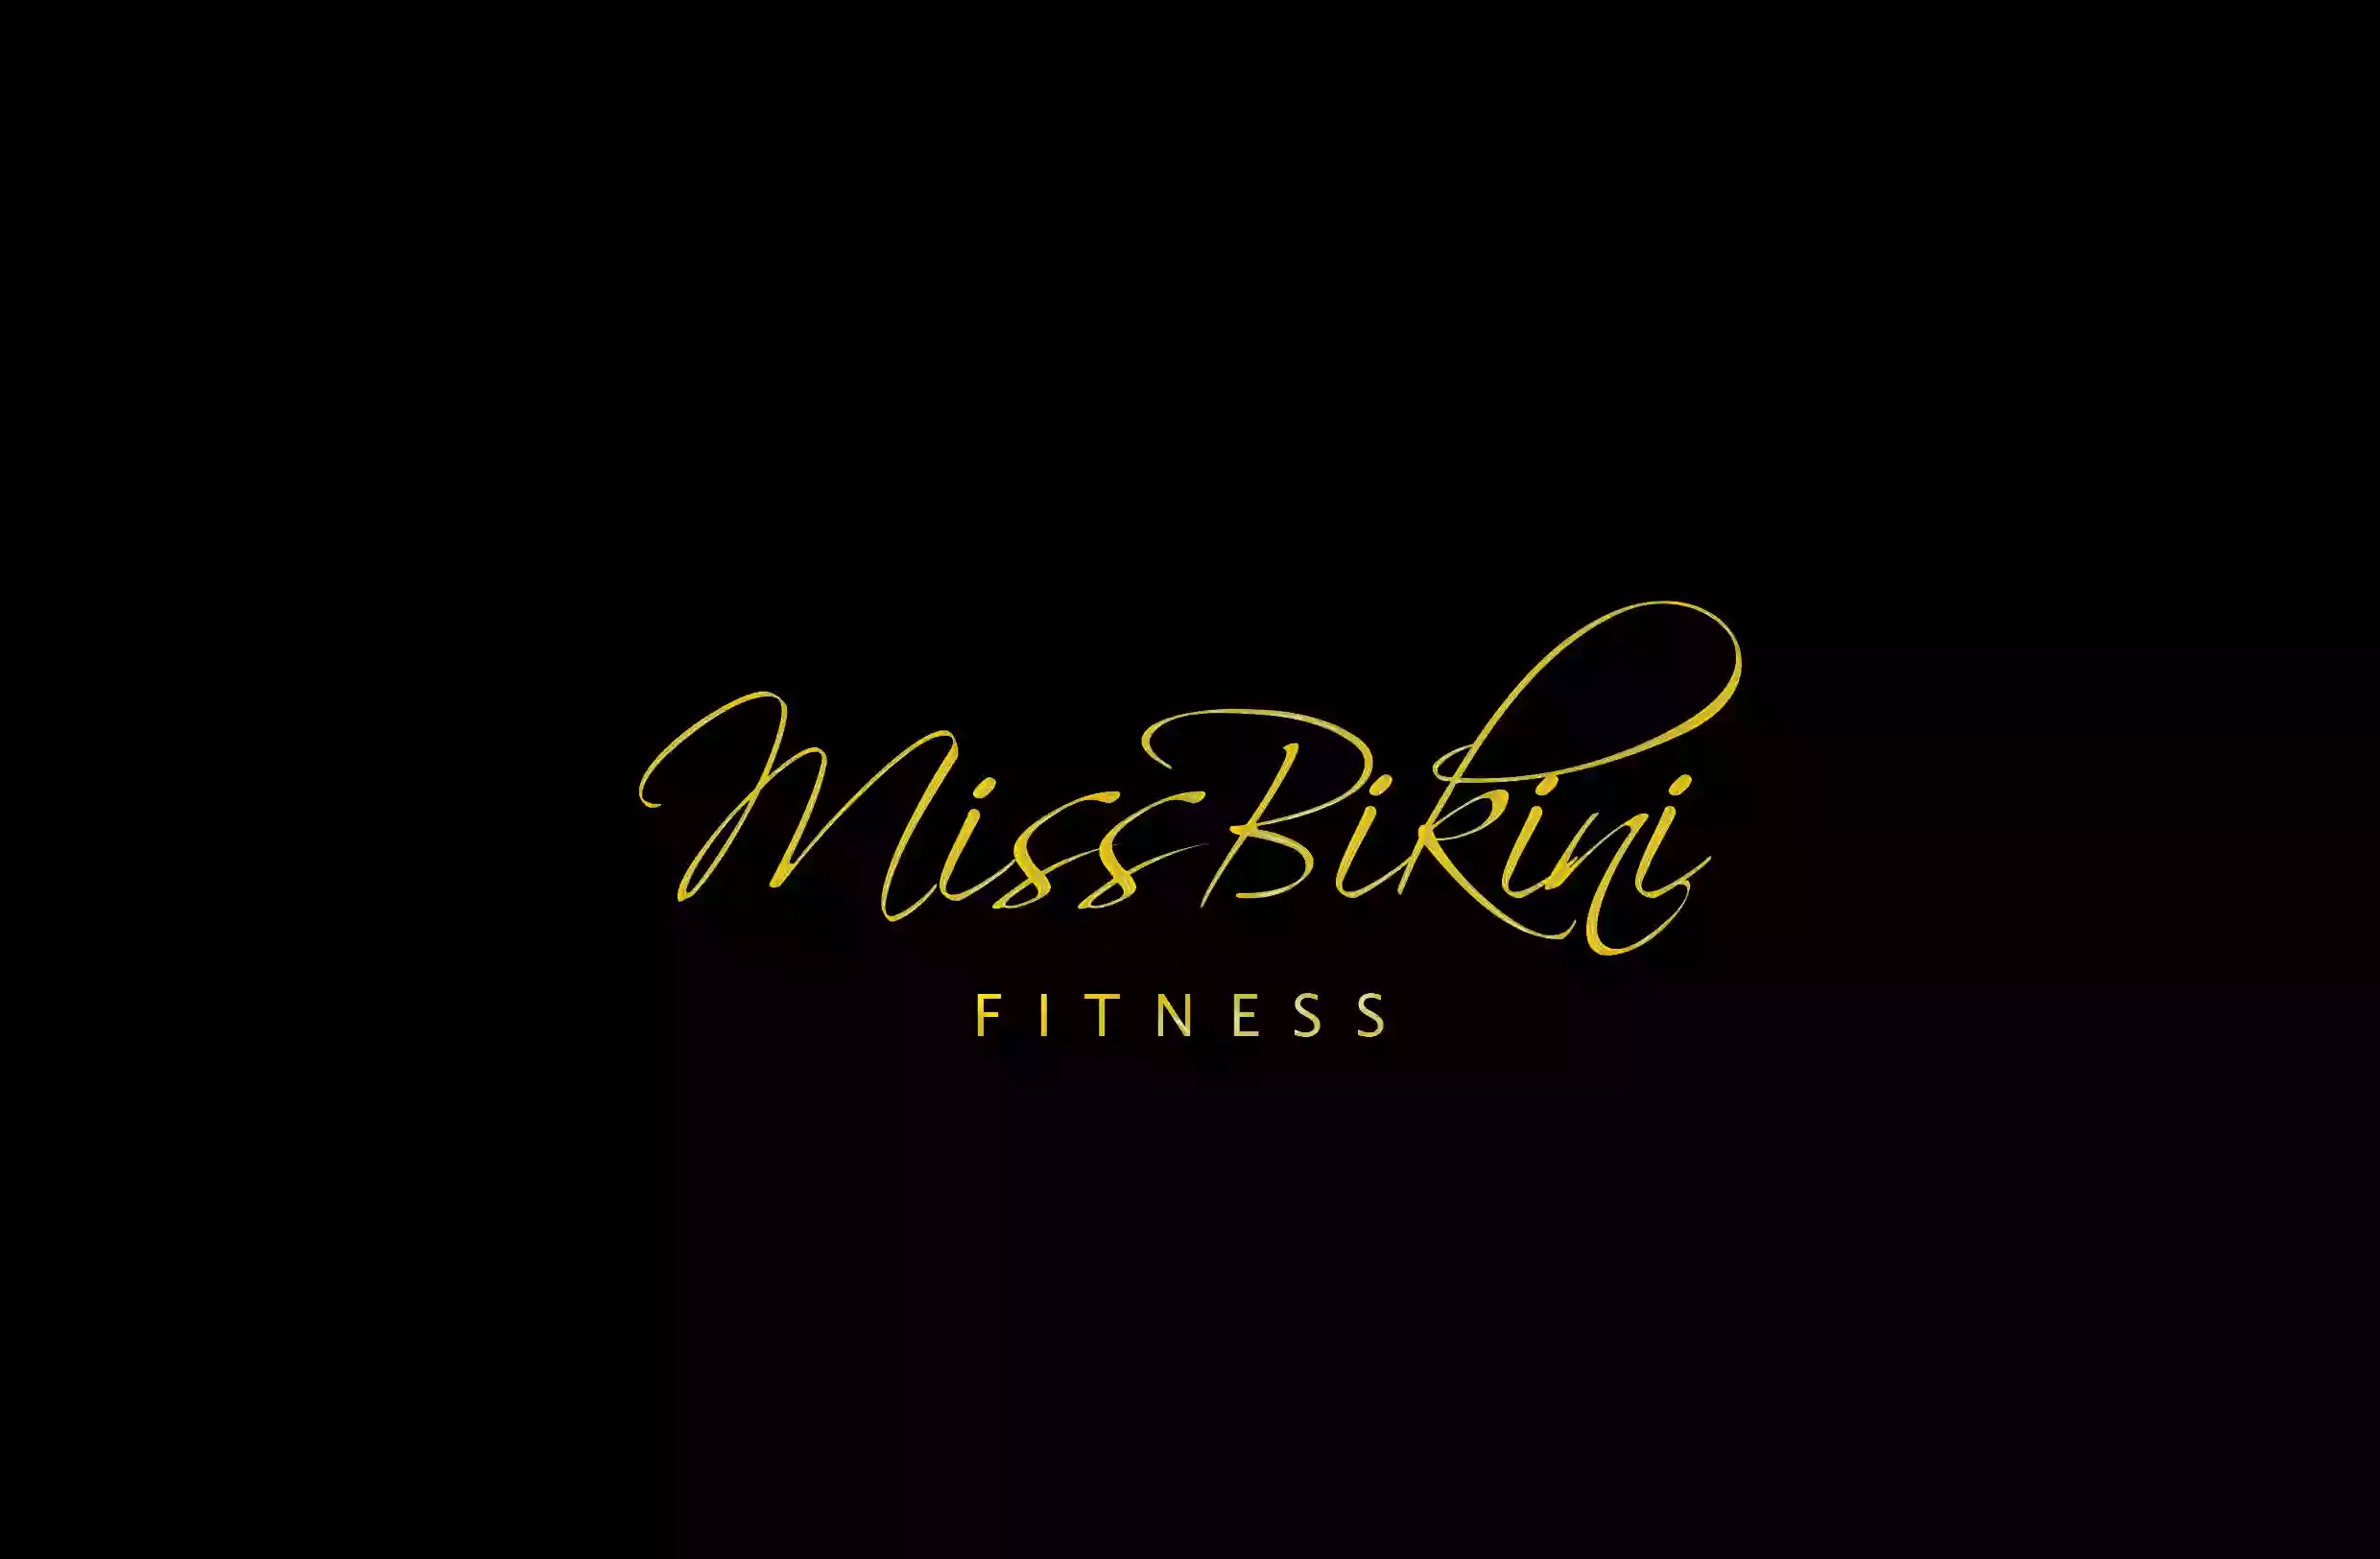 Miss Bikini Fitness